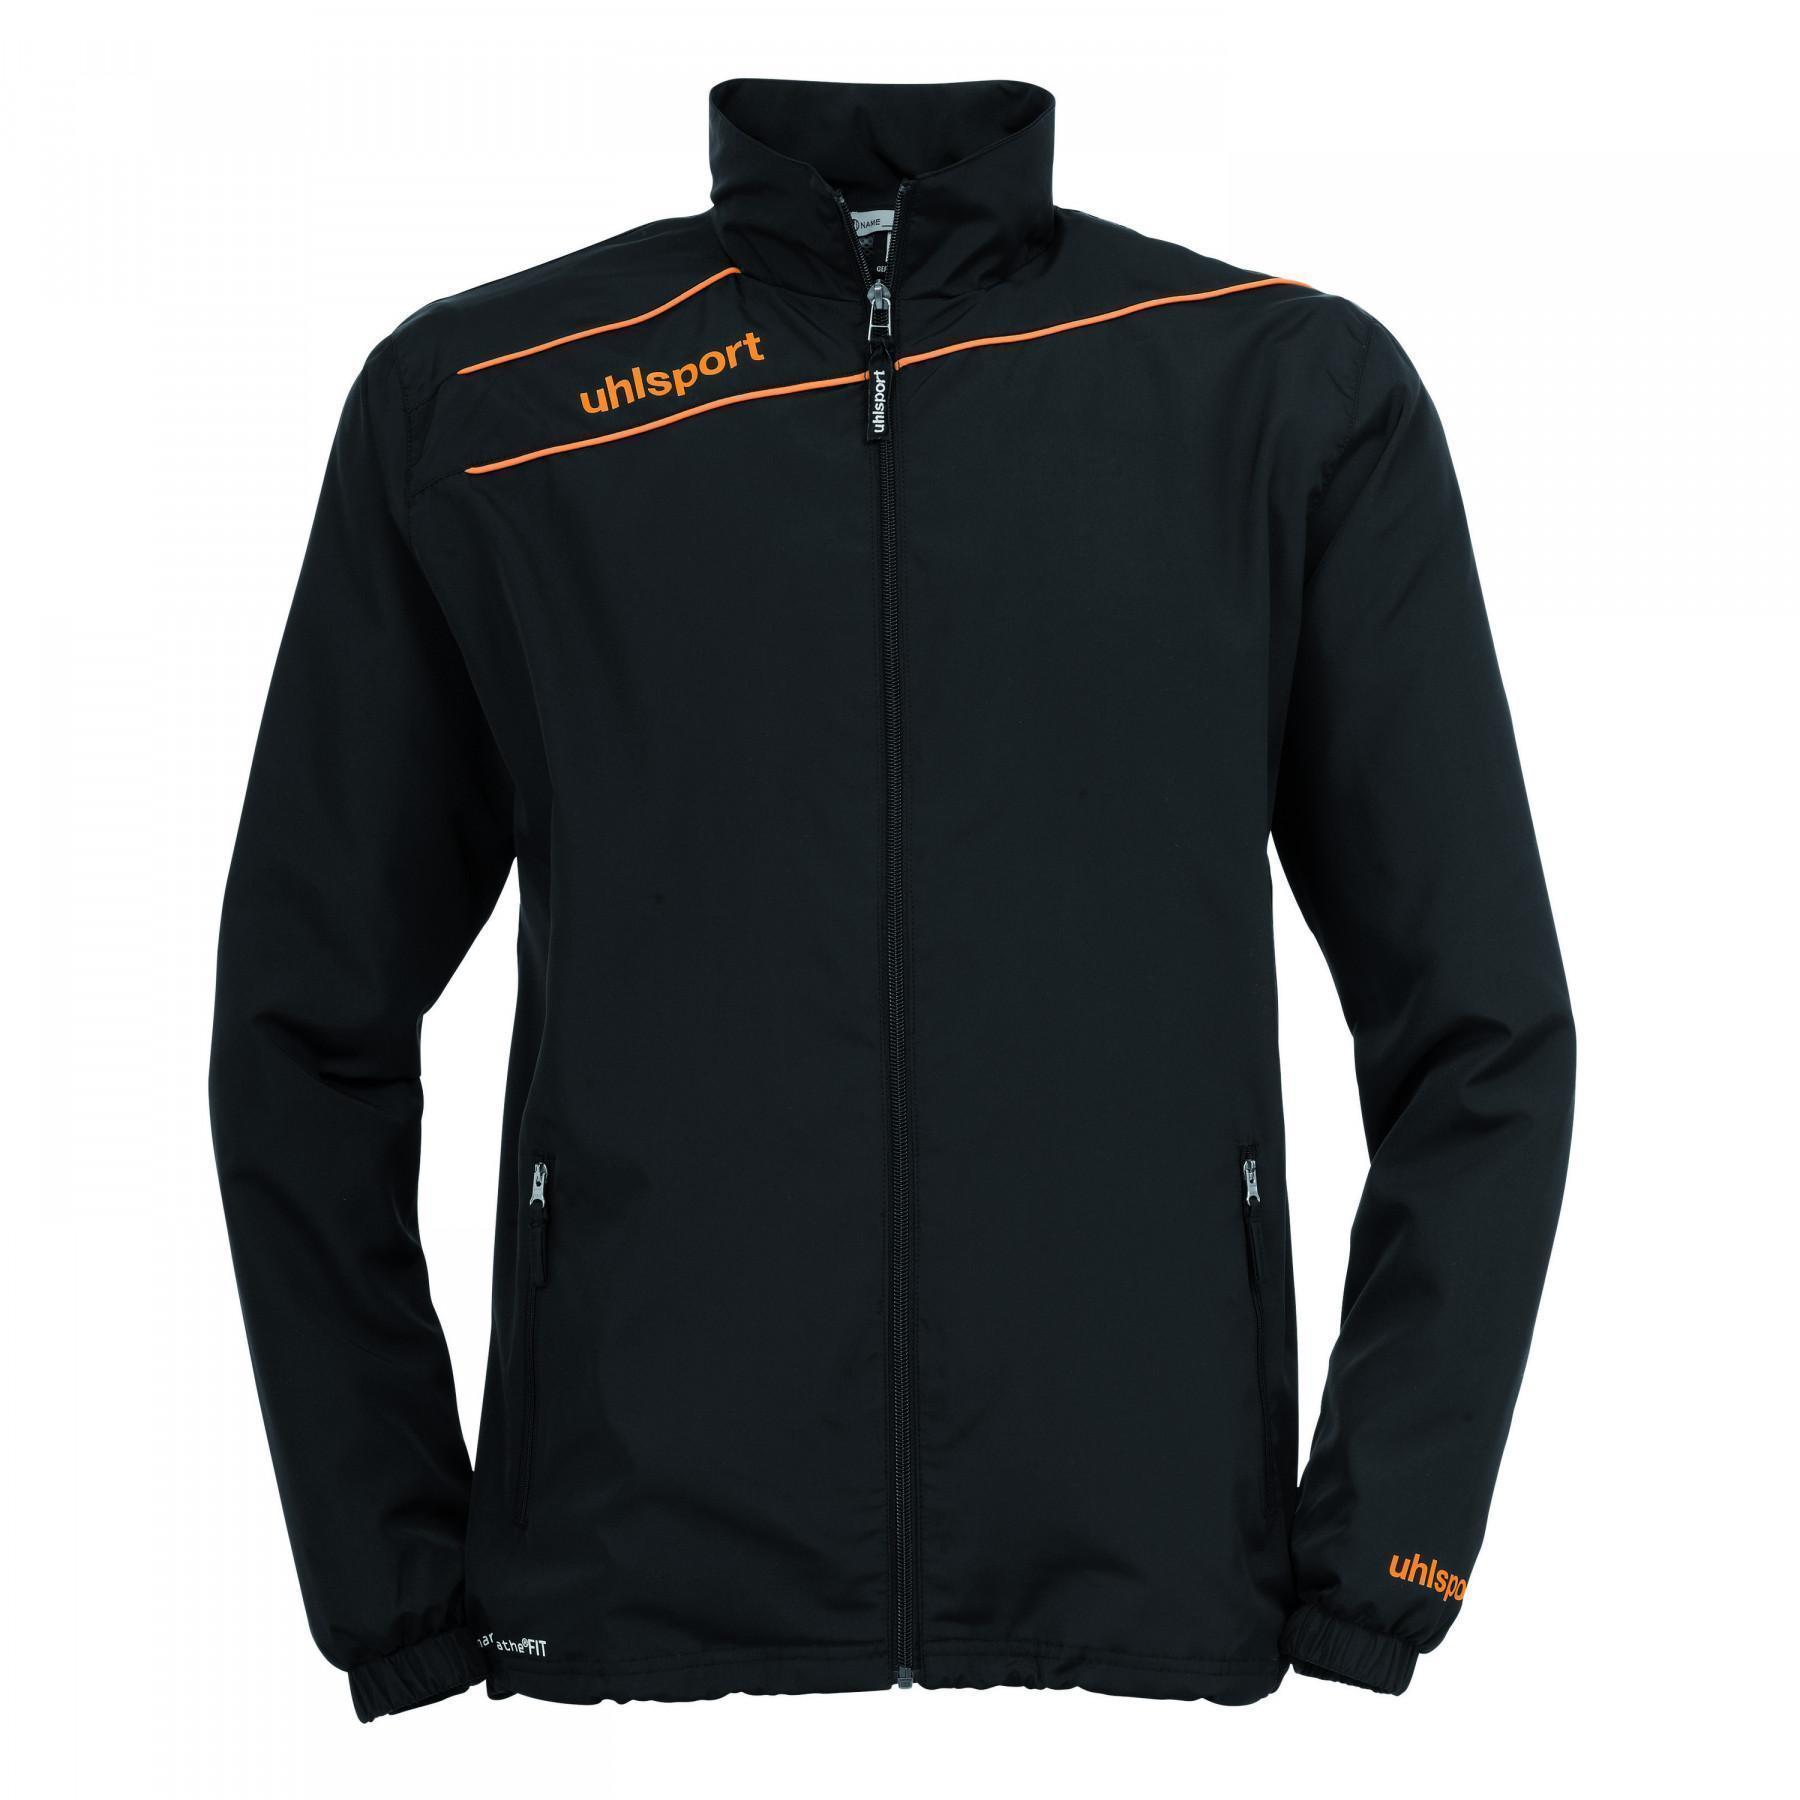 Track jacket Uhlsport Stream 3.0